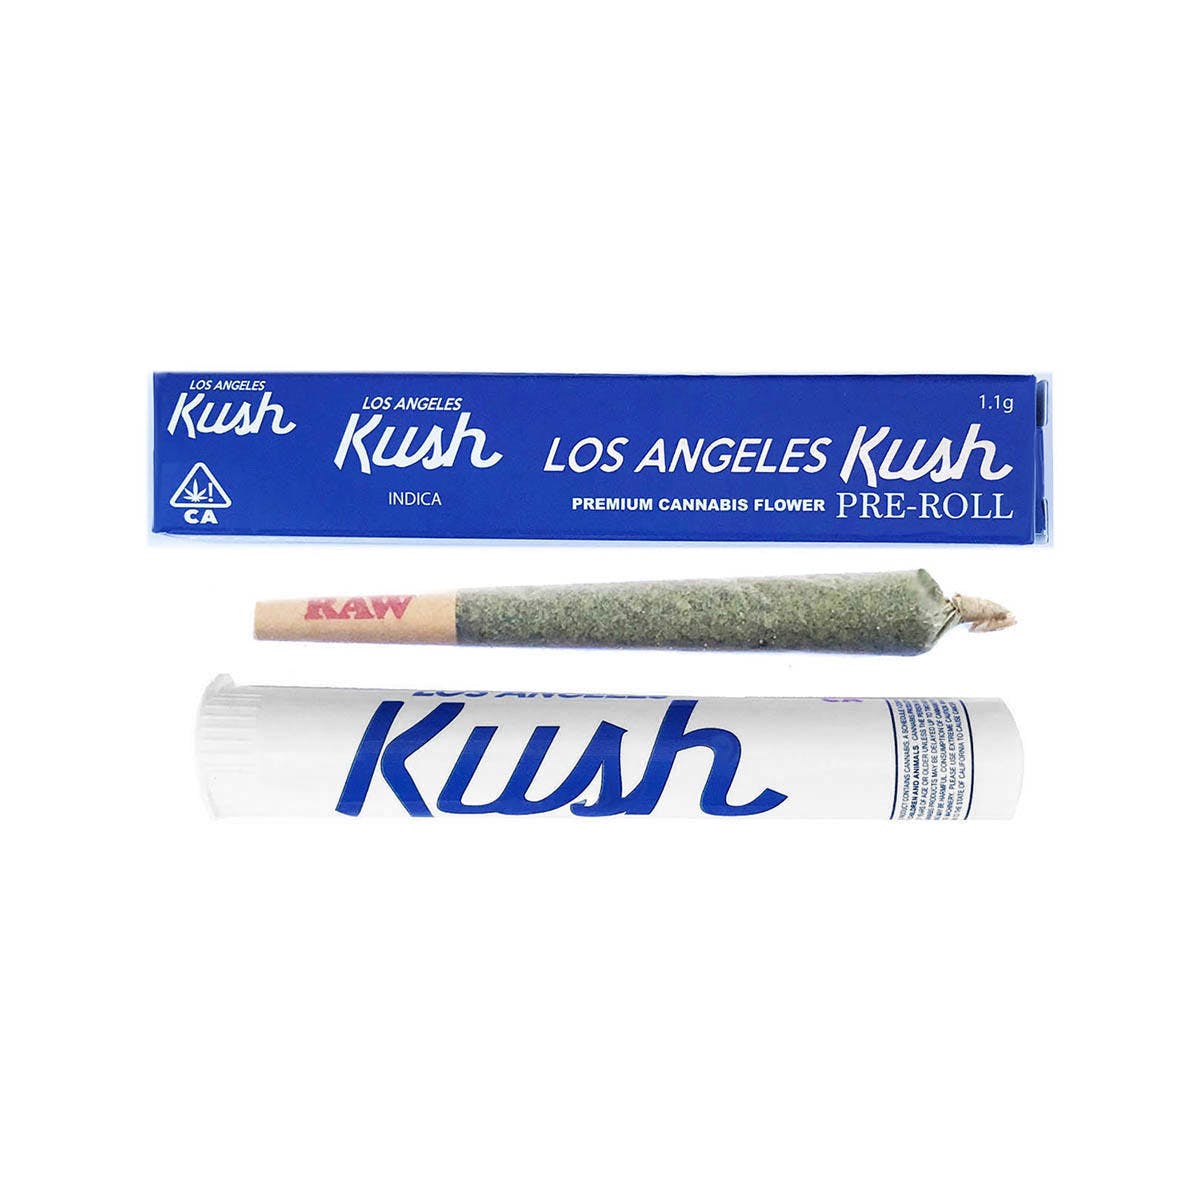 marijuana-dispensaries-natural-remedies-caregivers-in-los-angeles-los-angeles-kush-lak-pre-roll-1g